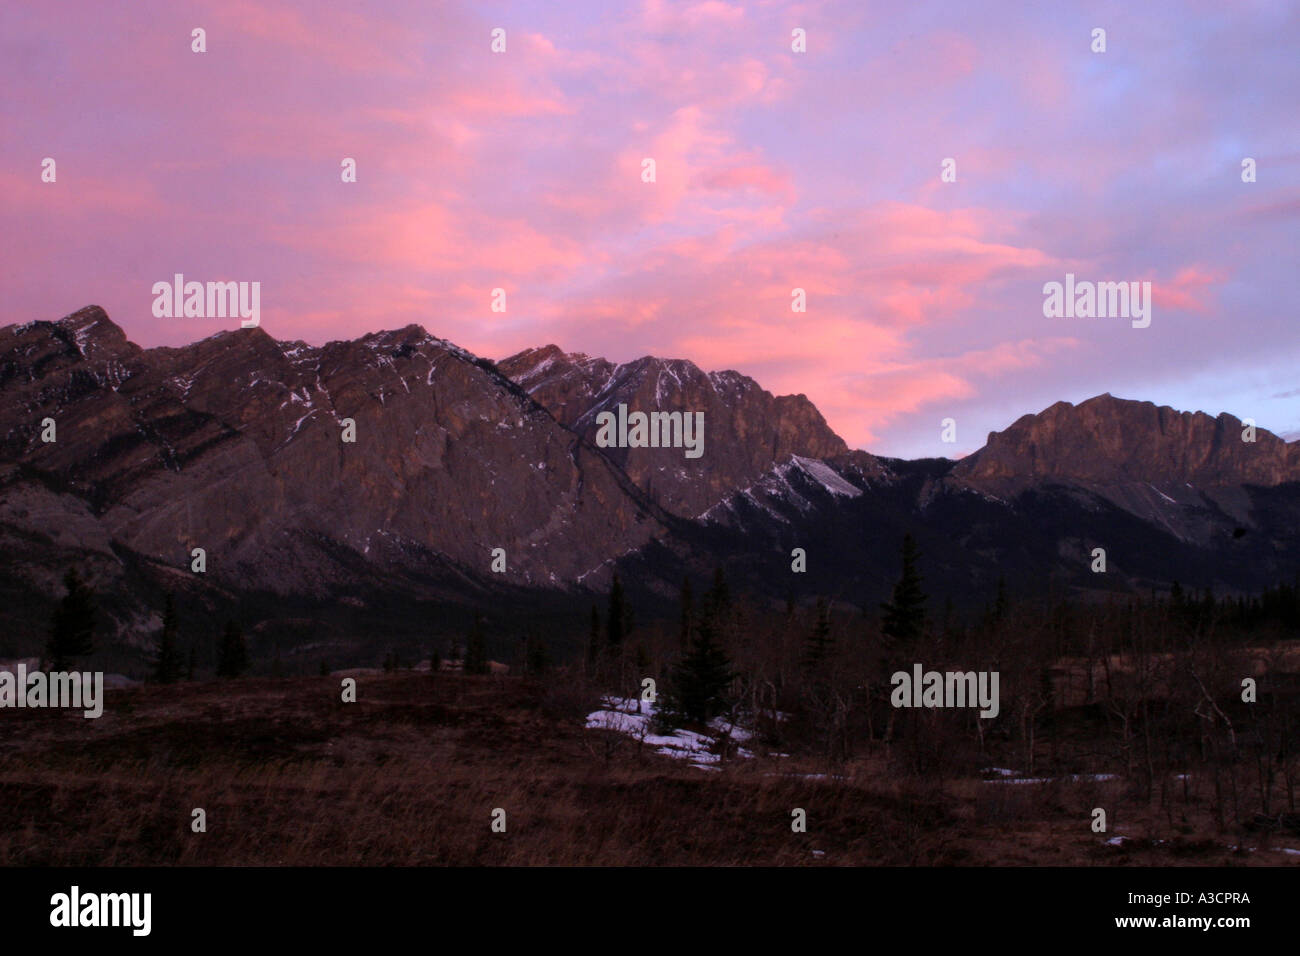 Mountain sunrise; Dawn in the Rockies Stock Photo